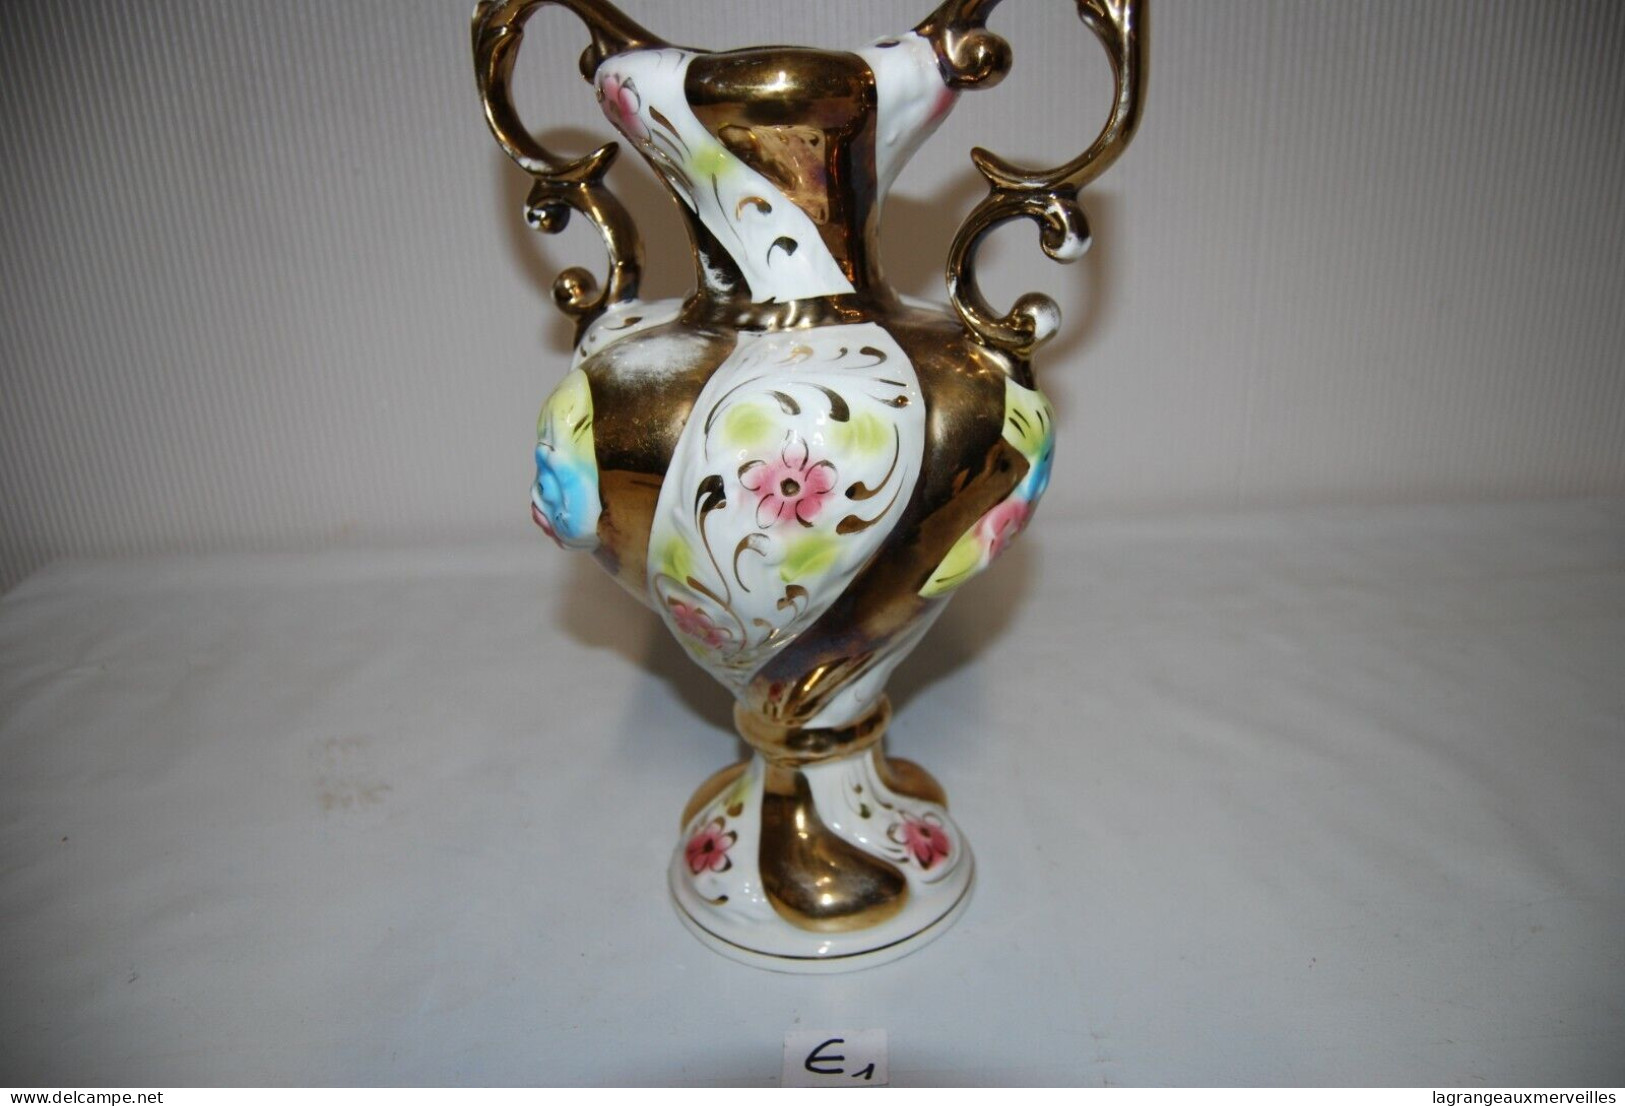 E1 Magnifique Vase - Beau Travail Italien - Vasen